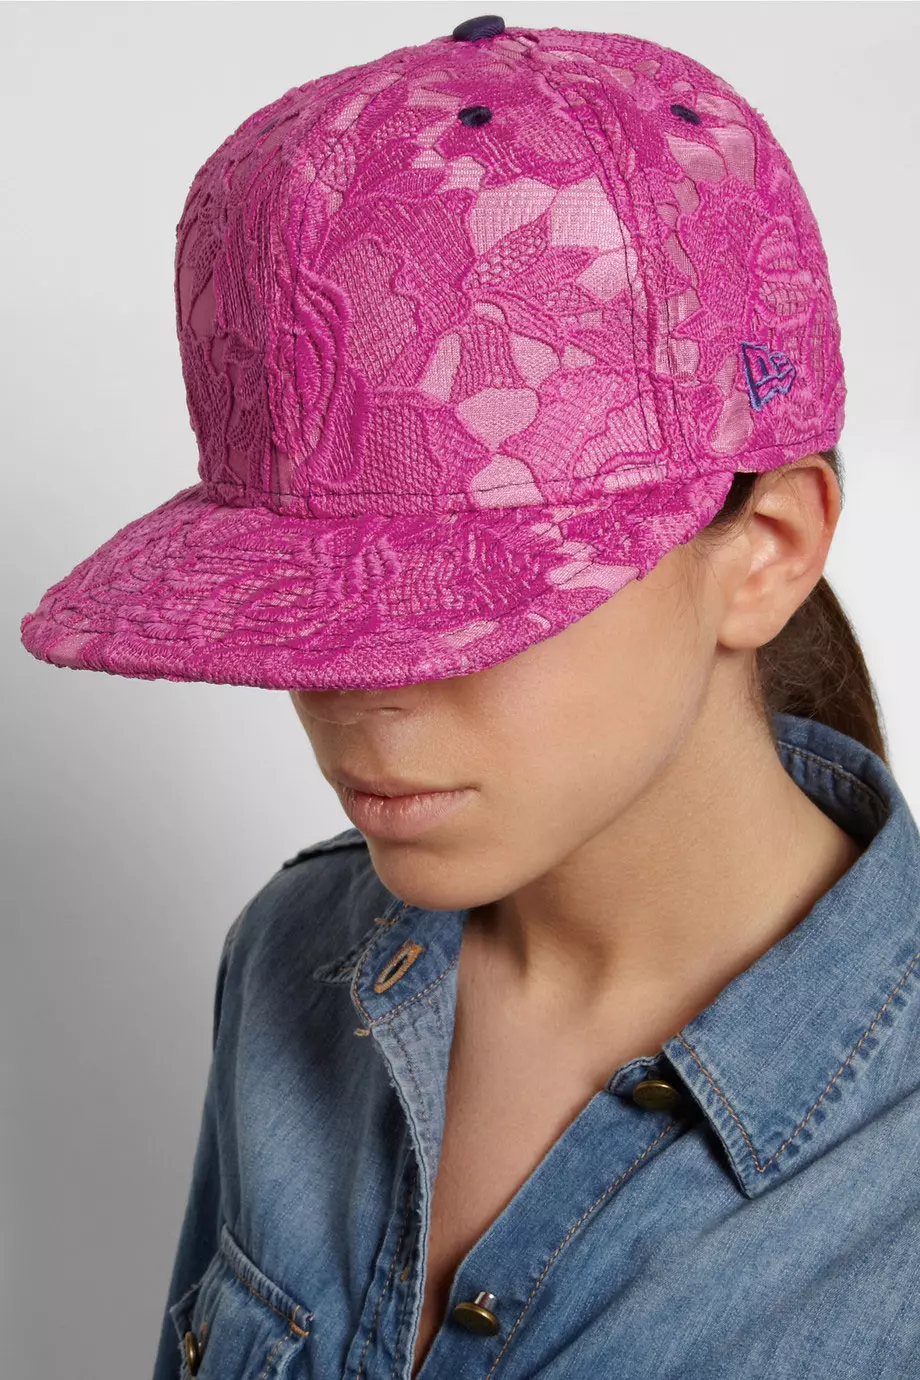 כובע מצחייה משולב תחרה באתר net a porter, 25 ליש"ט